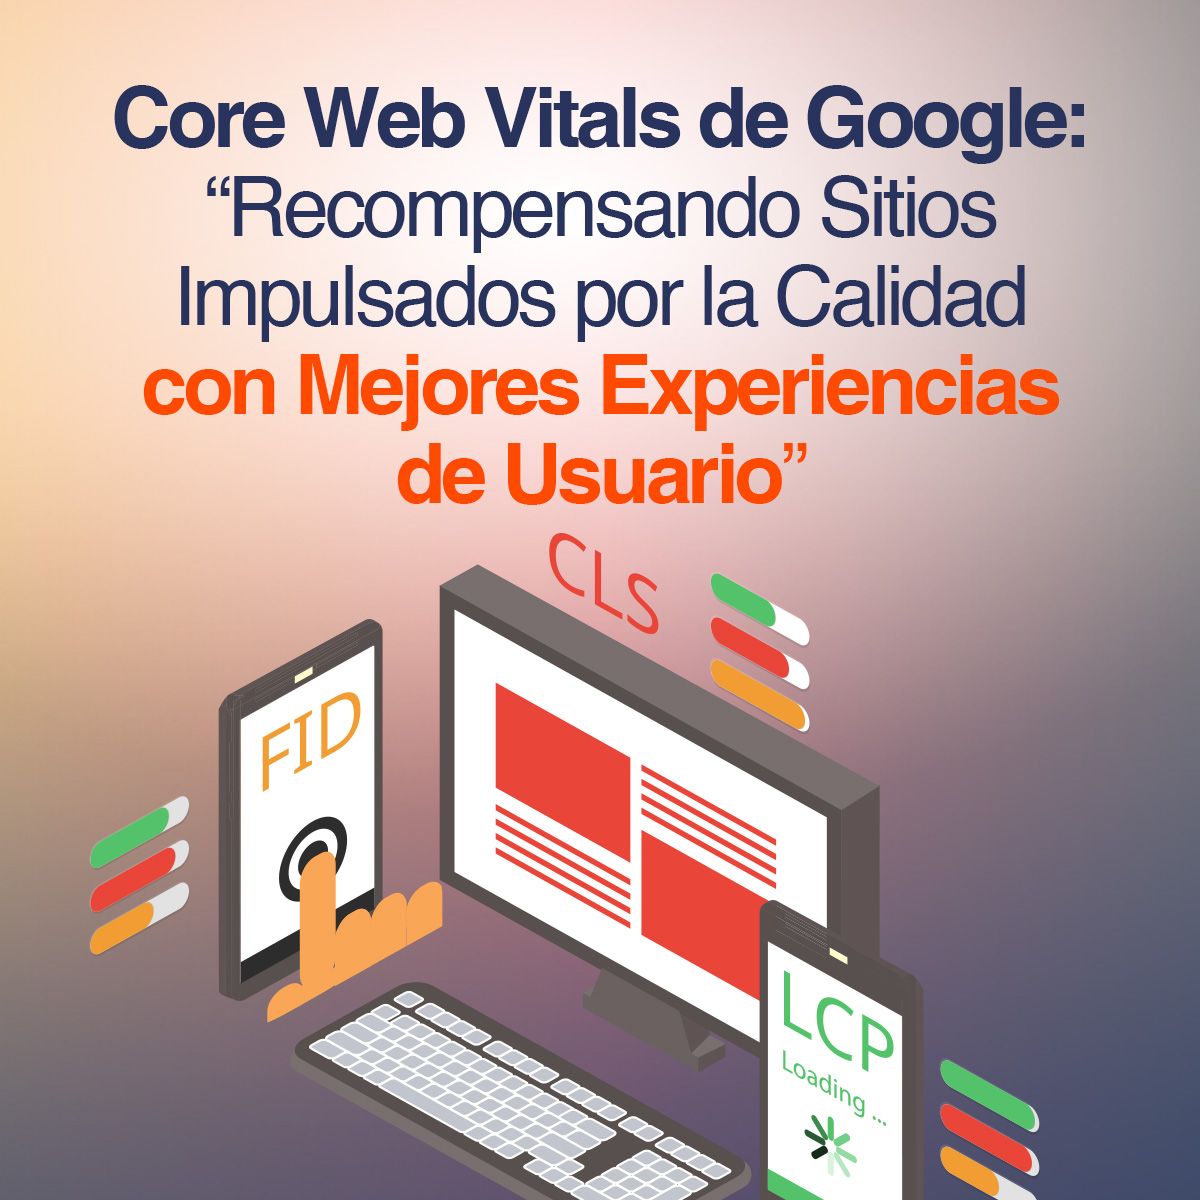 Core Web Vitals de Google: Recompensando Sitios Web Impulsados por la Calidad con Mejores Experiencias de Usuario